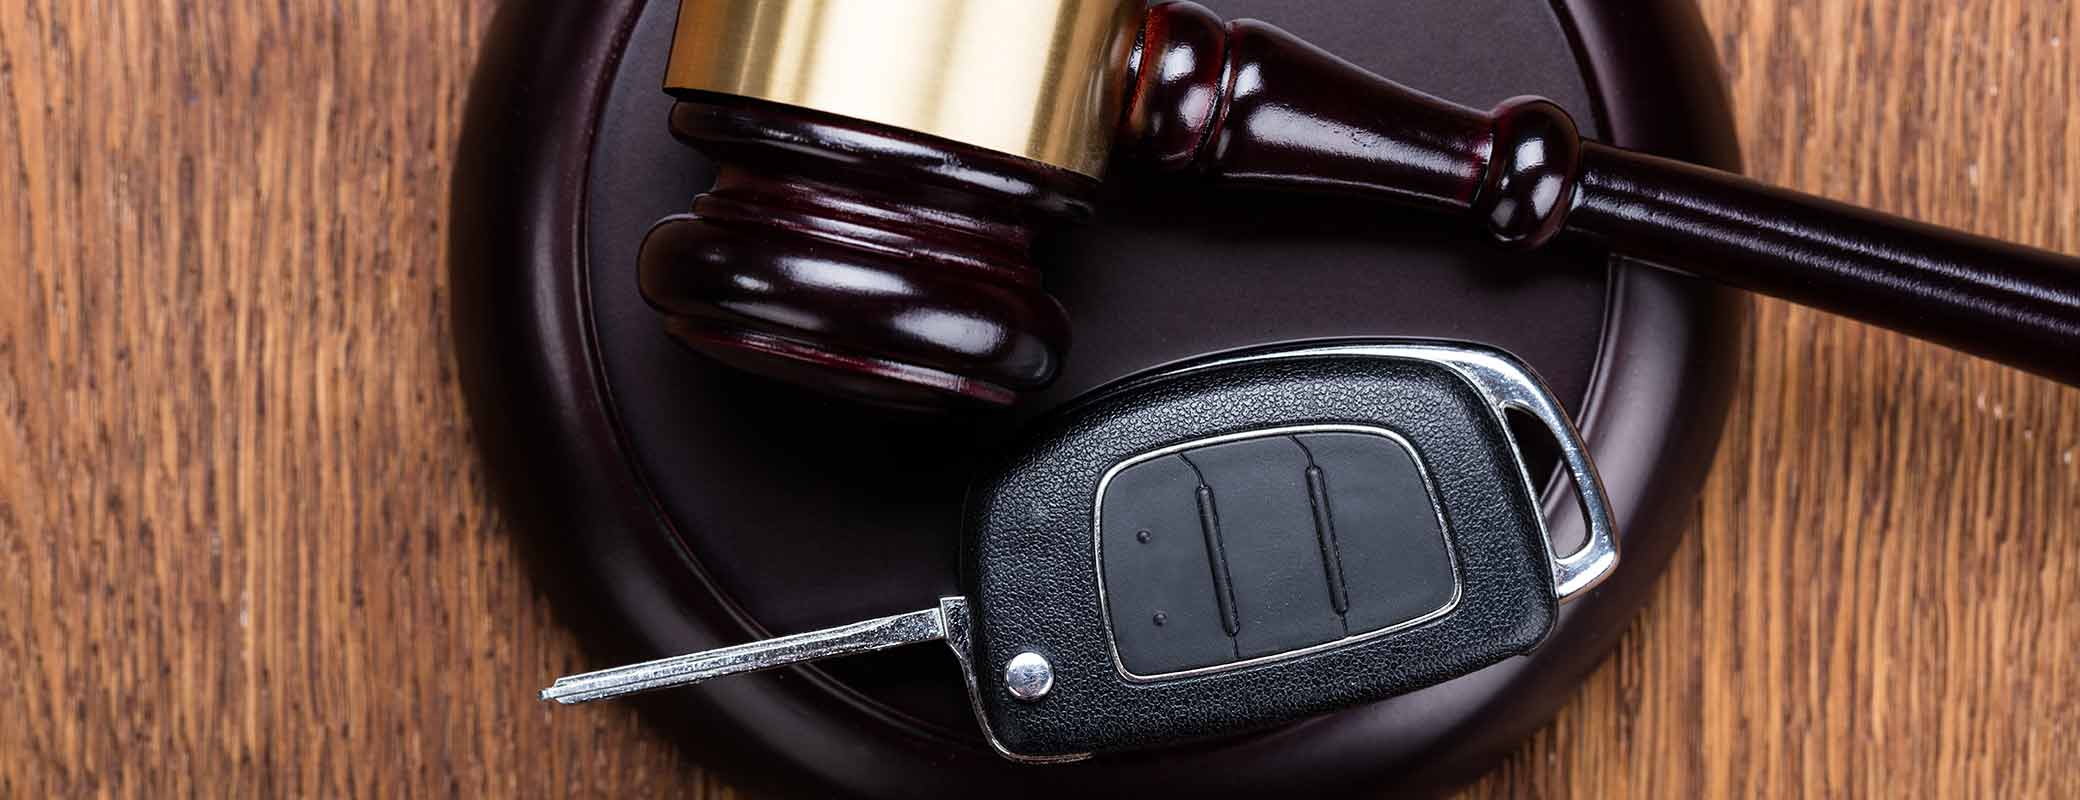 BGH-Urteil im Abgasskandal: Auto behalten & Schadensersatz fordern